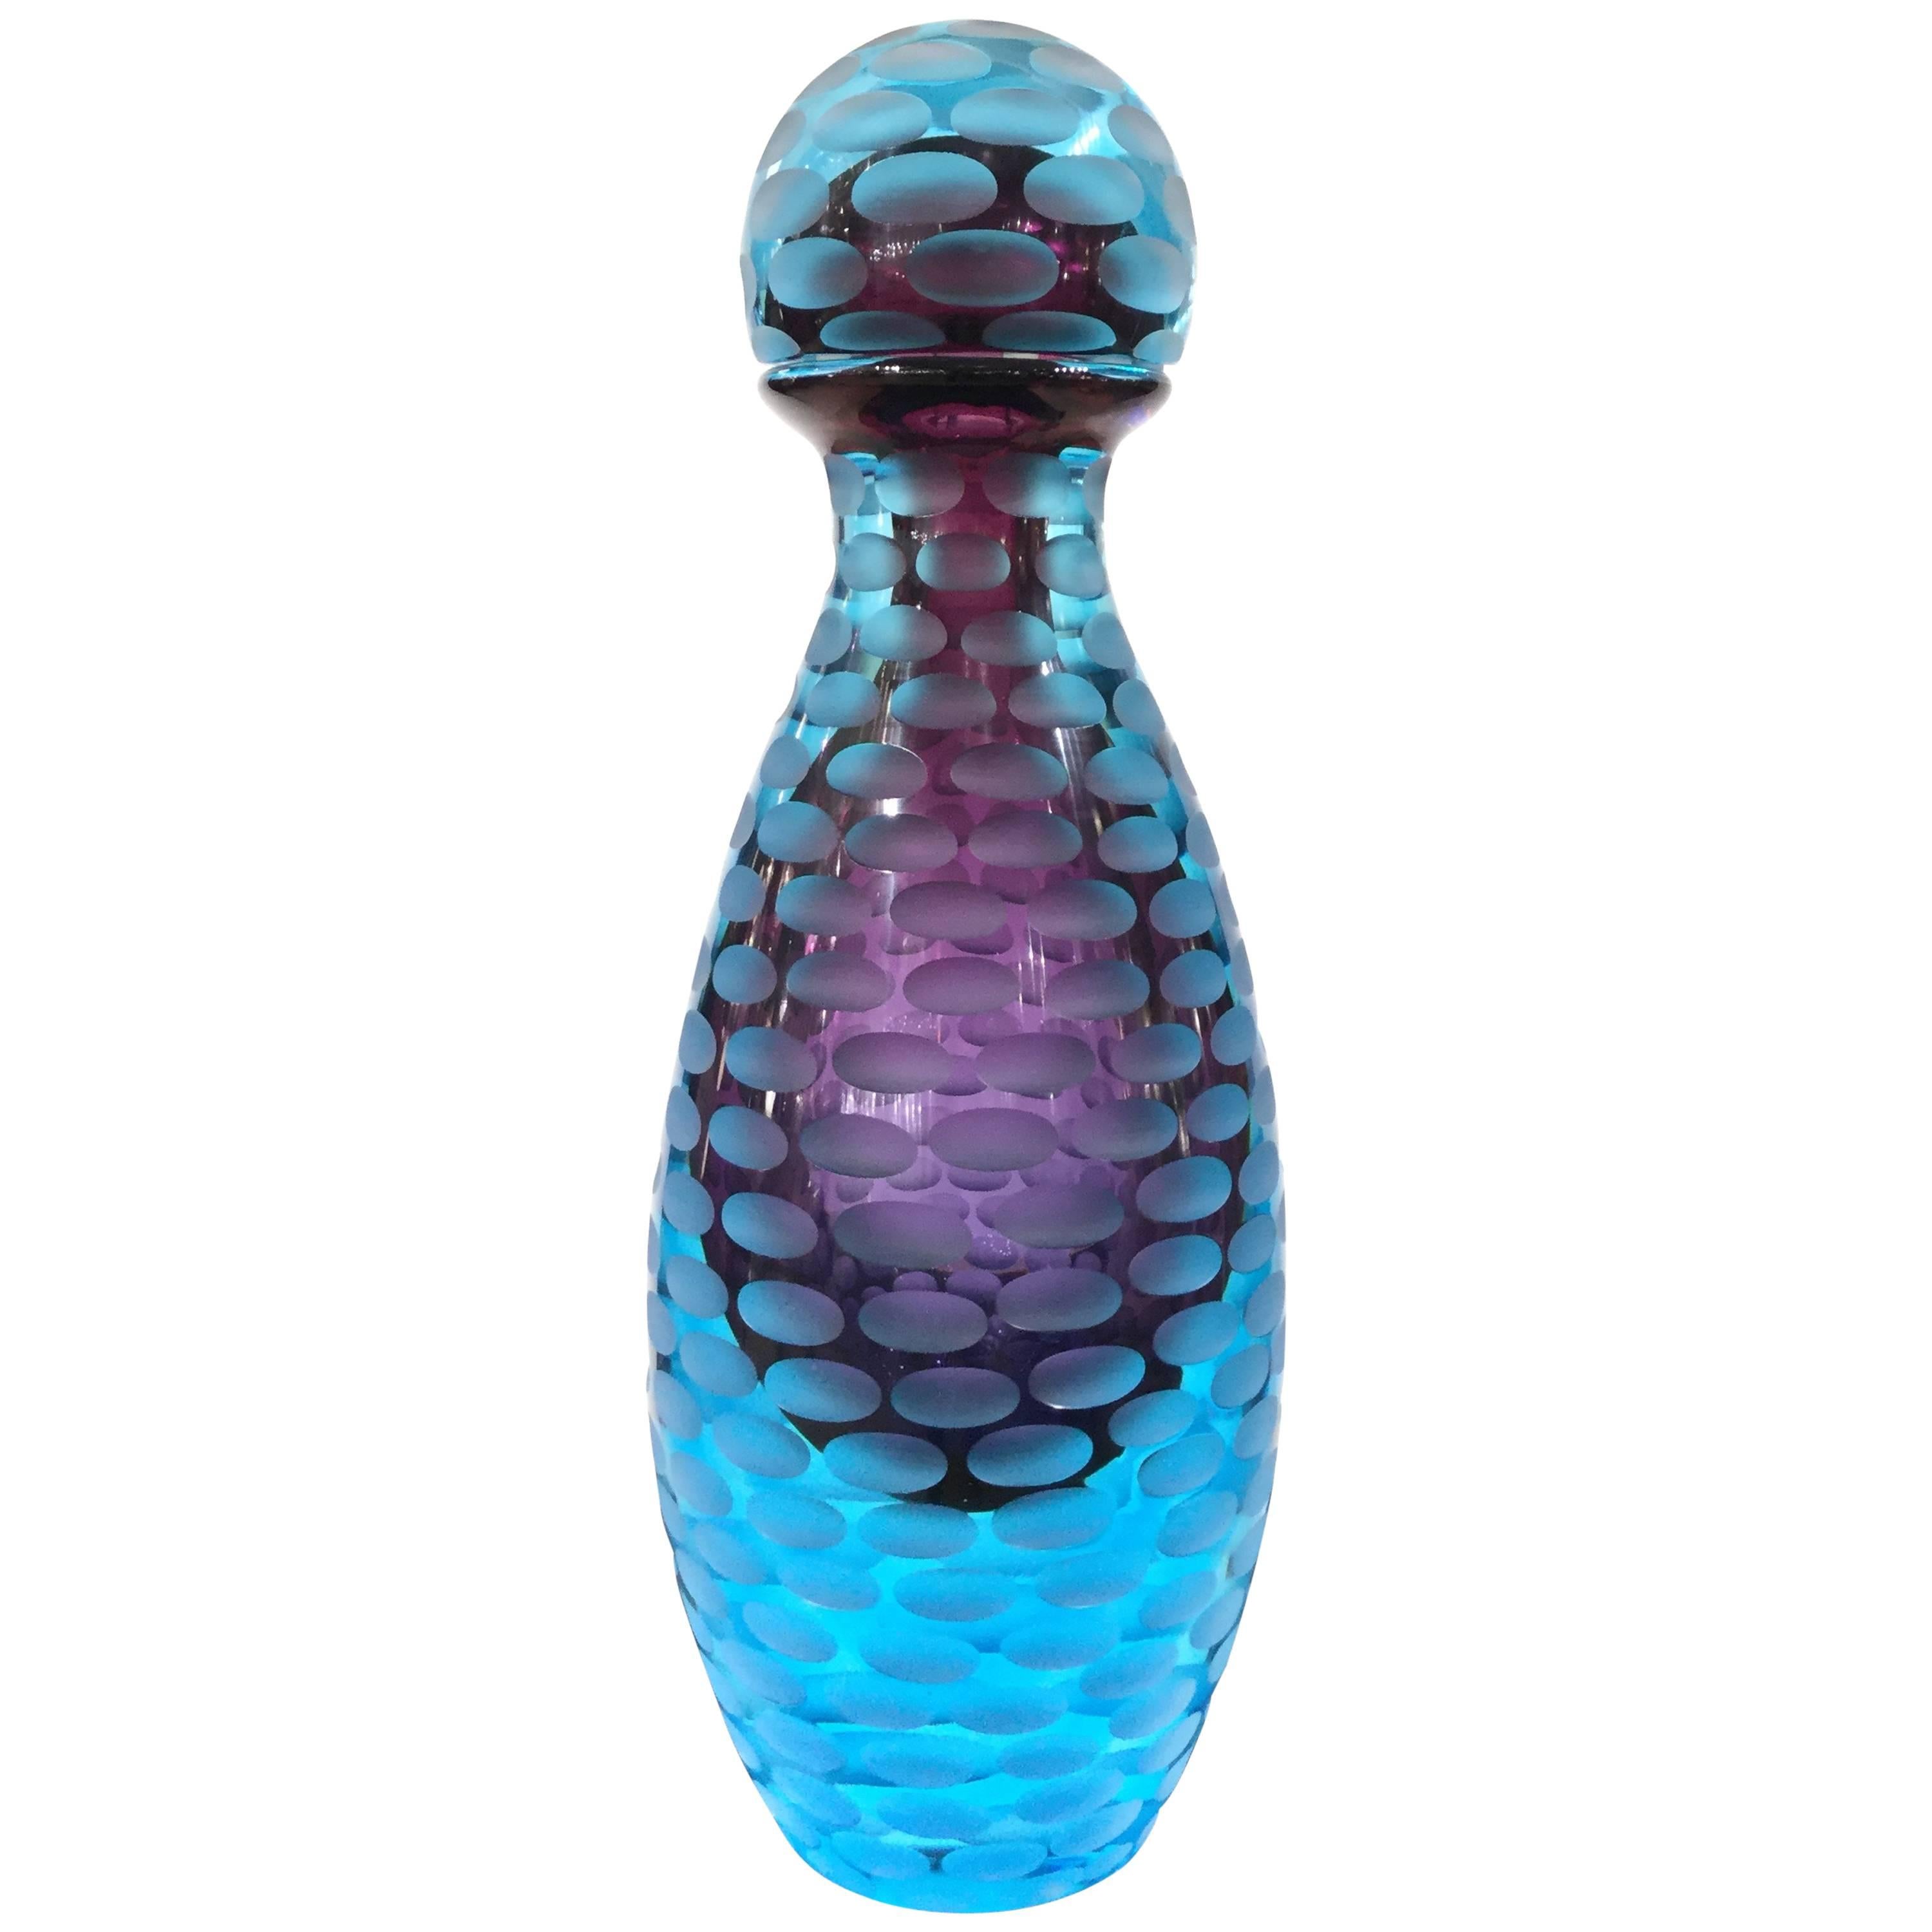 Monumental Blue Murano Glass Bottle